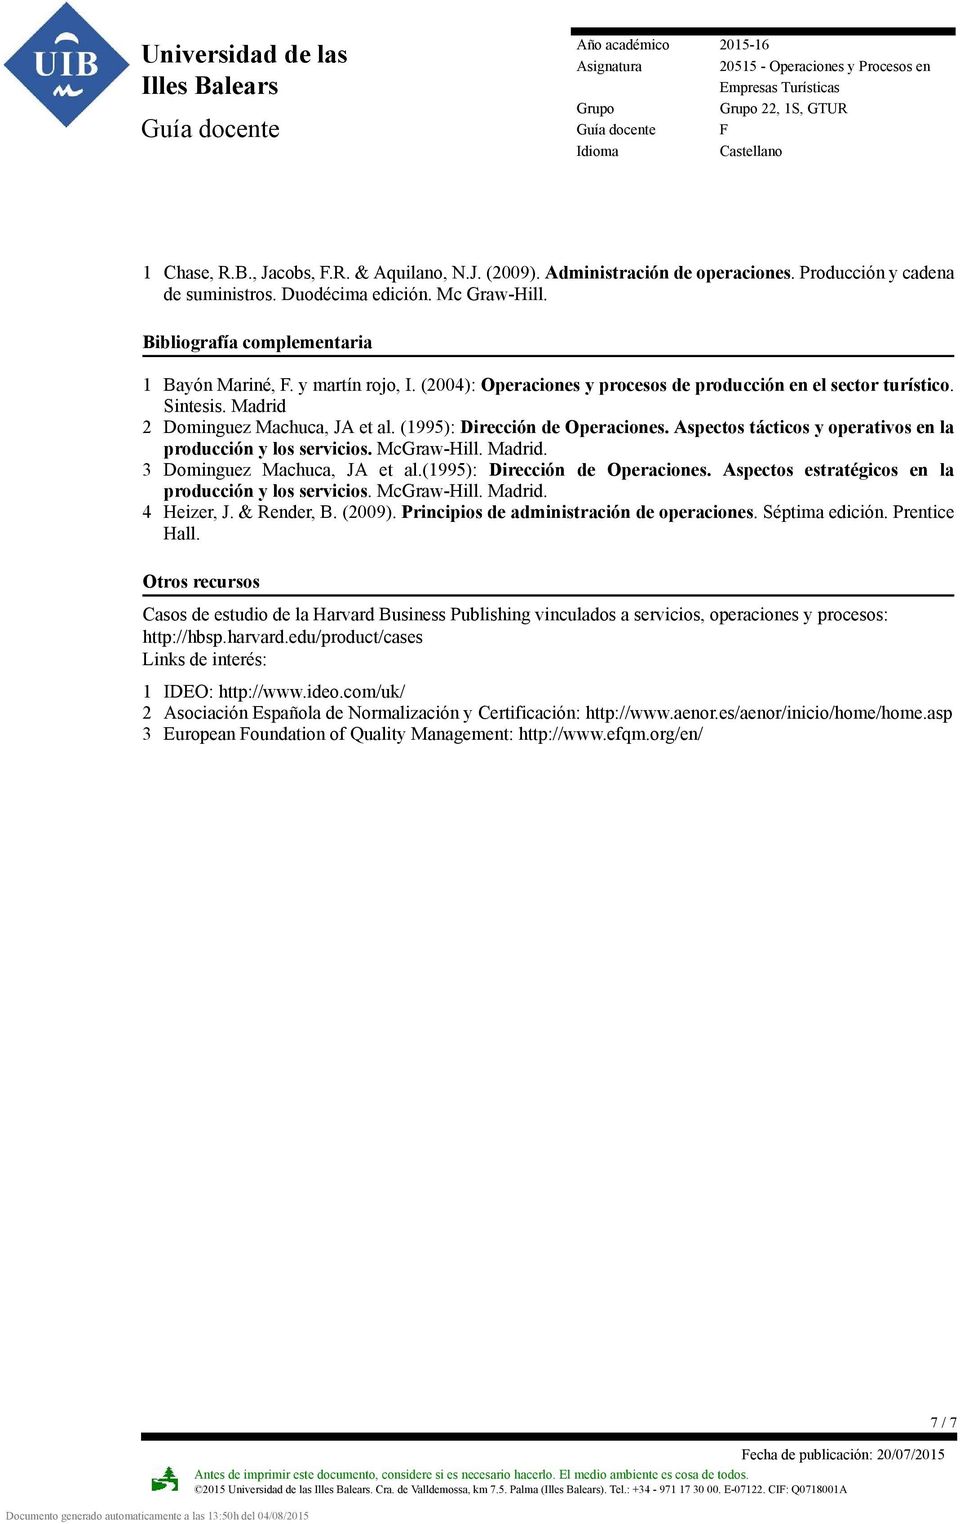 (1995): Dirección de Operaciones. Aspectos tácticos y operativos en la producción y los servicios. McGraw-Hill. Madrid. 3 Dominguez Machuca, JA et al.(1995): Dirección de Operaciones. Aspectos estratégicos en la producción y los servicios.